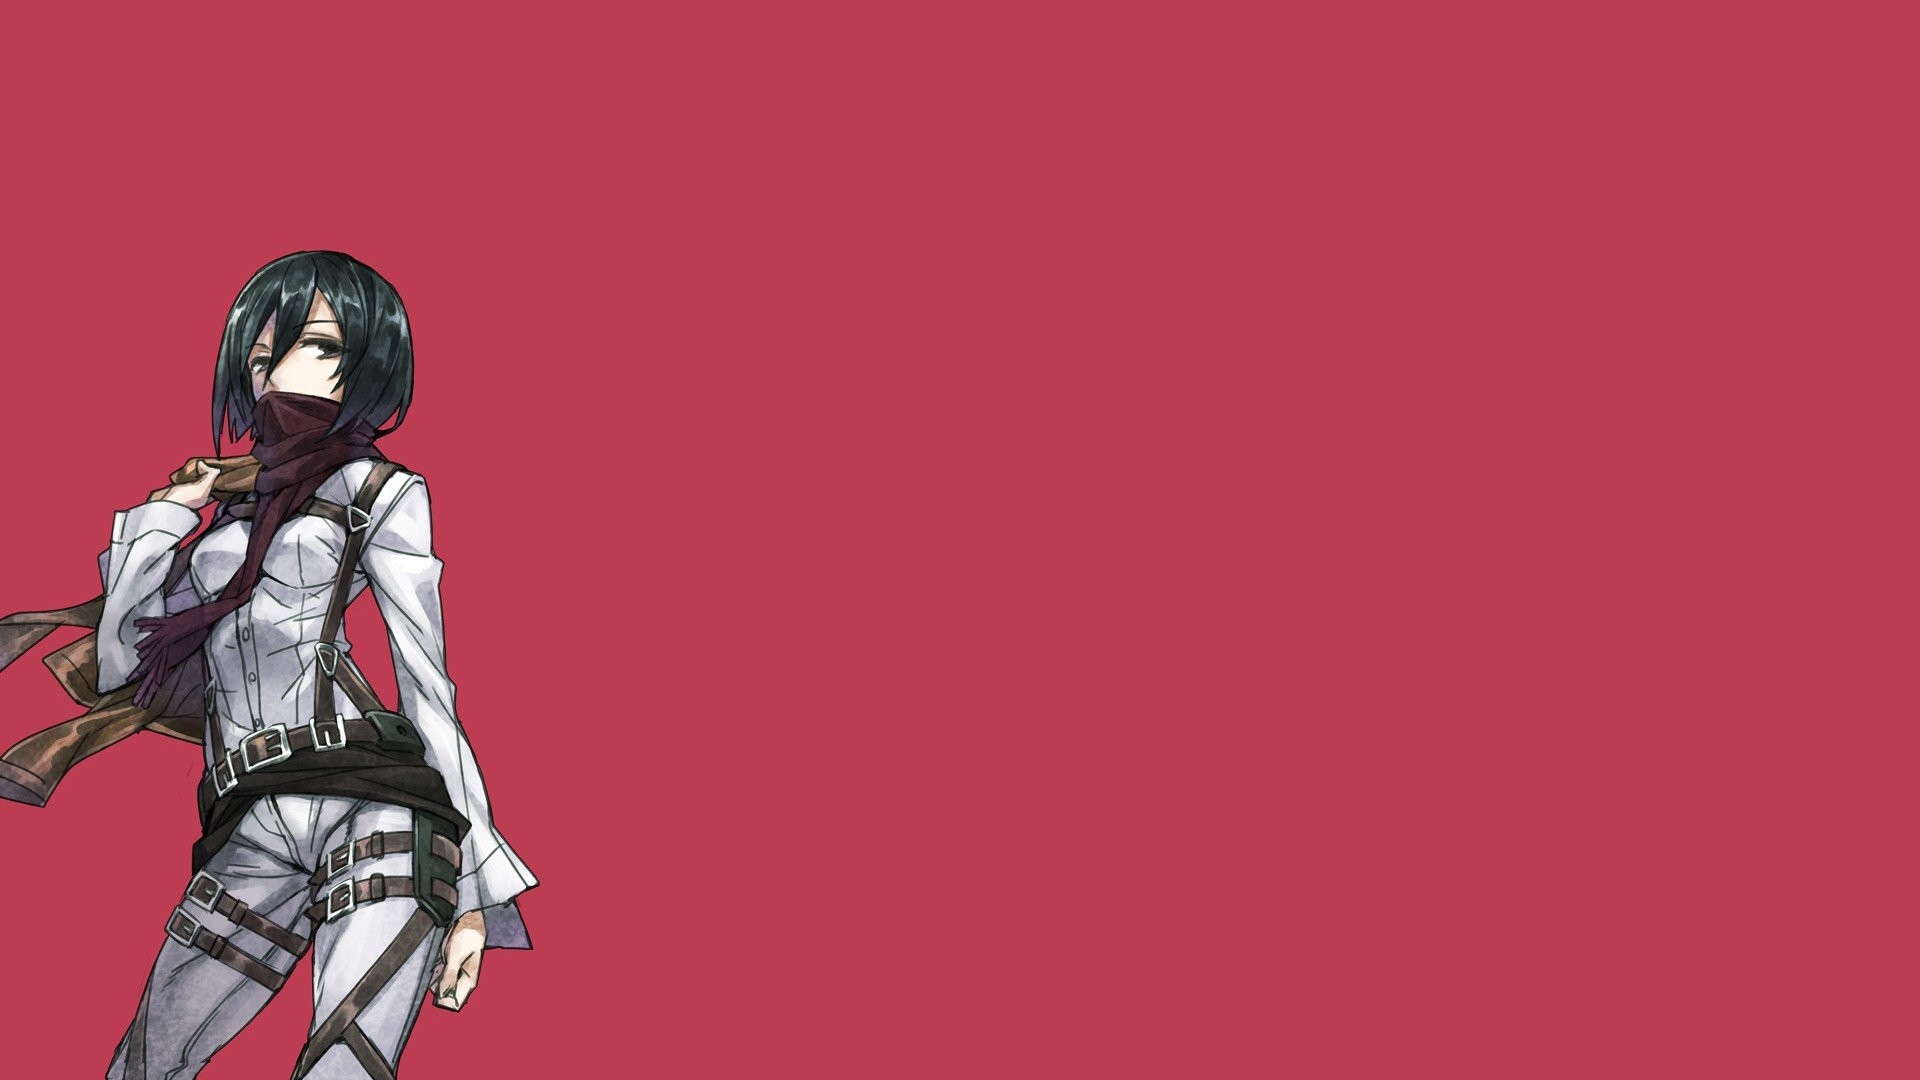 mikasa hd wallpaper,rosso,cartone animato,animazione,cg artwork,anime